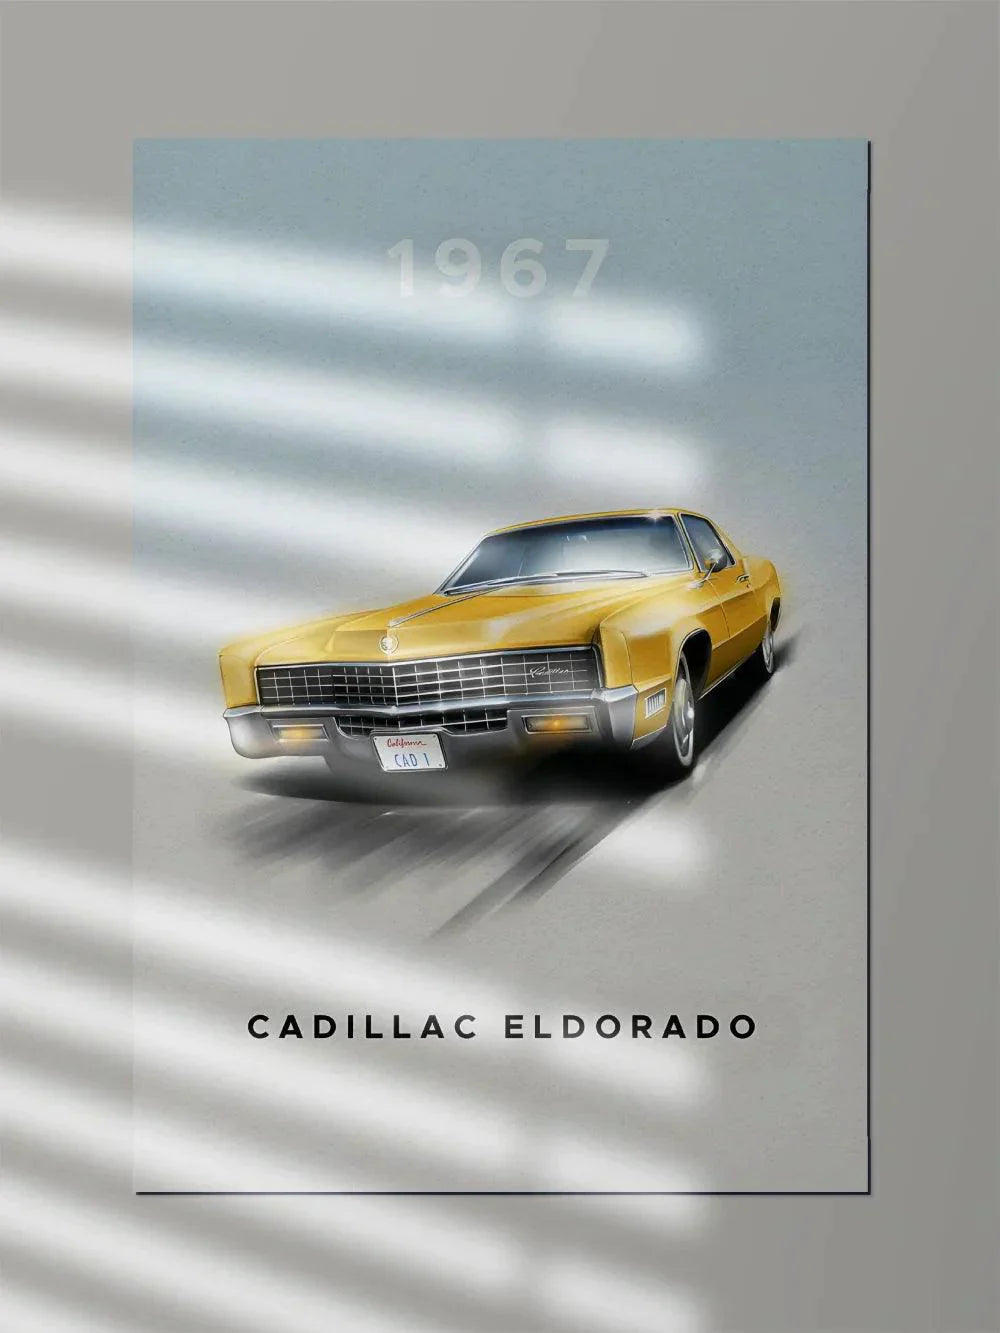 Cadillac Eldorado 1967 - Poster Wiz